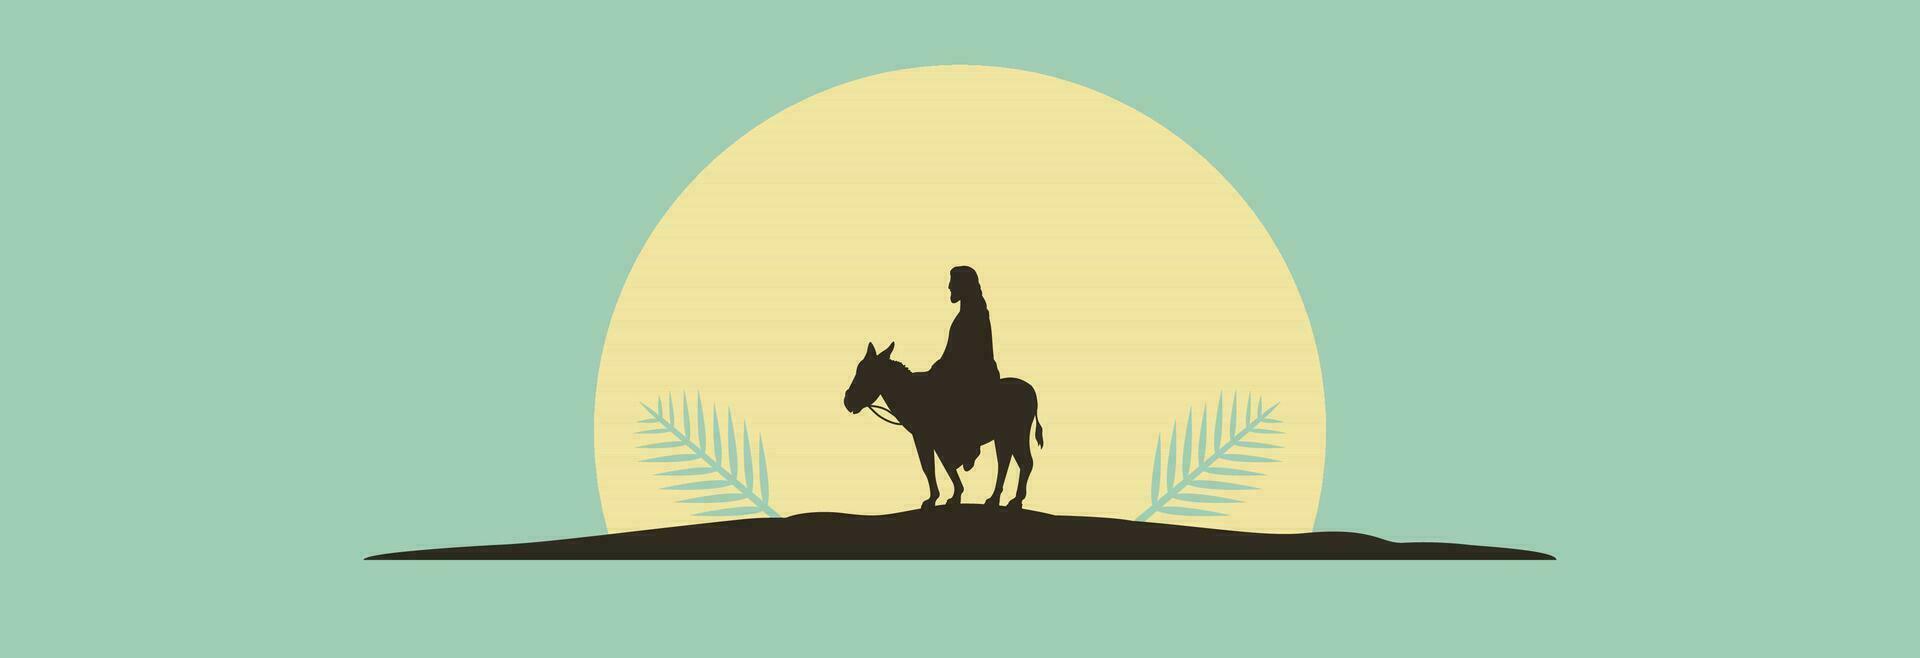 Jesus Christus ist Sitzung auf ein Esel. vektor